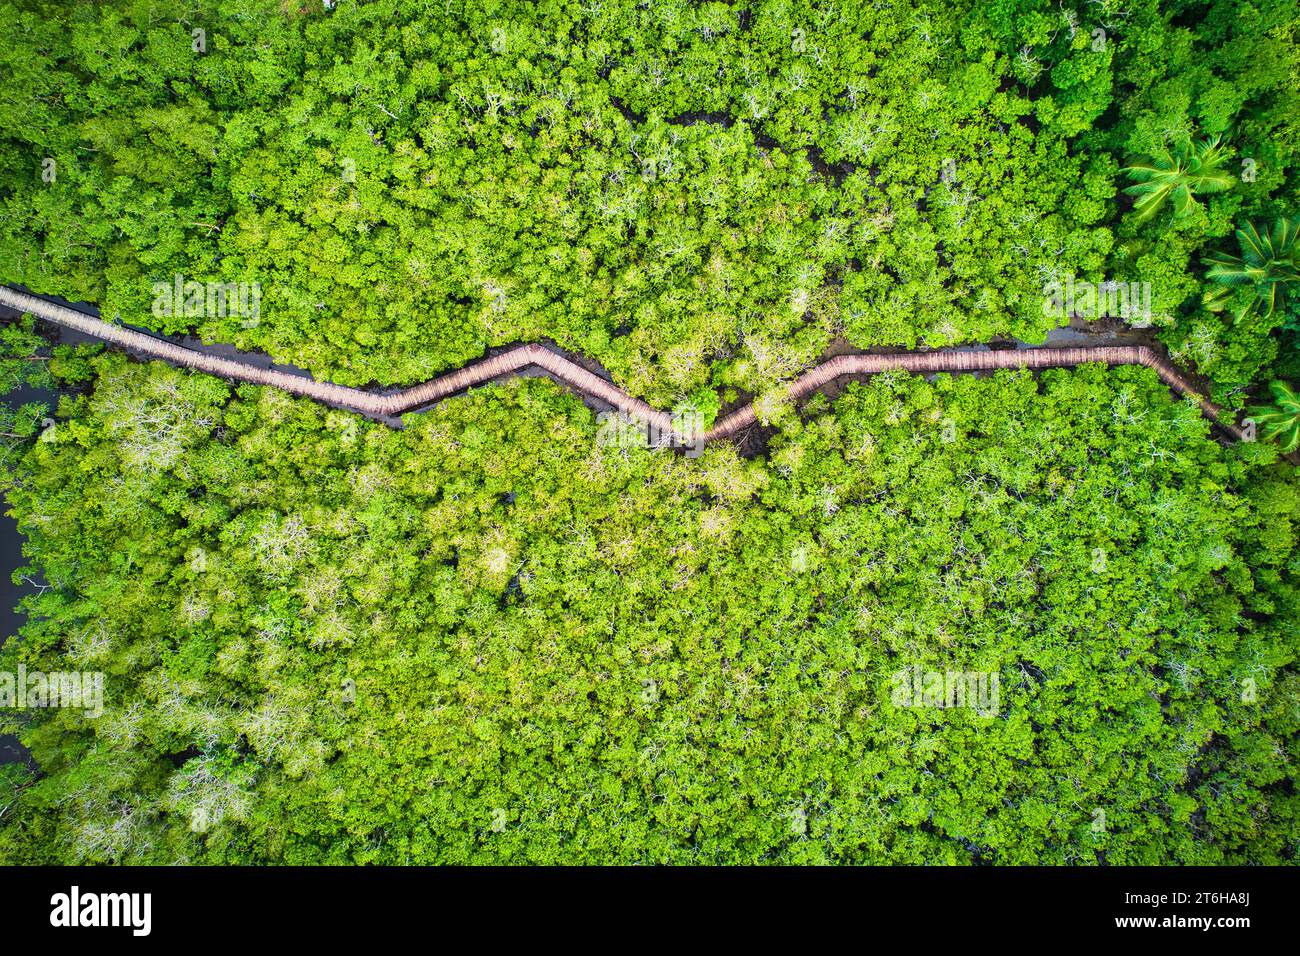 Drohnenfotografie der Küstenfeuchtgebiete von Port Launay, Mangroven, eines der besten Mangrovenfeuchtgebiete auf der Insel Mahé, das alle sieben Arten unterstützt Stockfoto